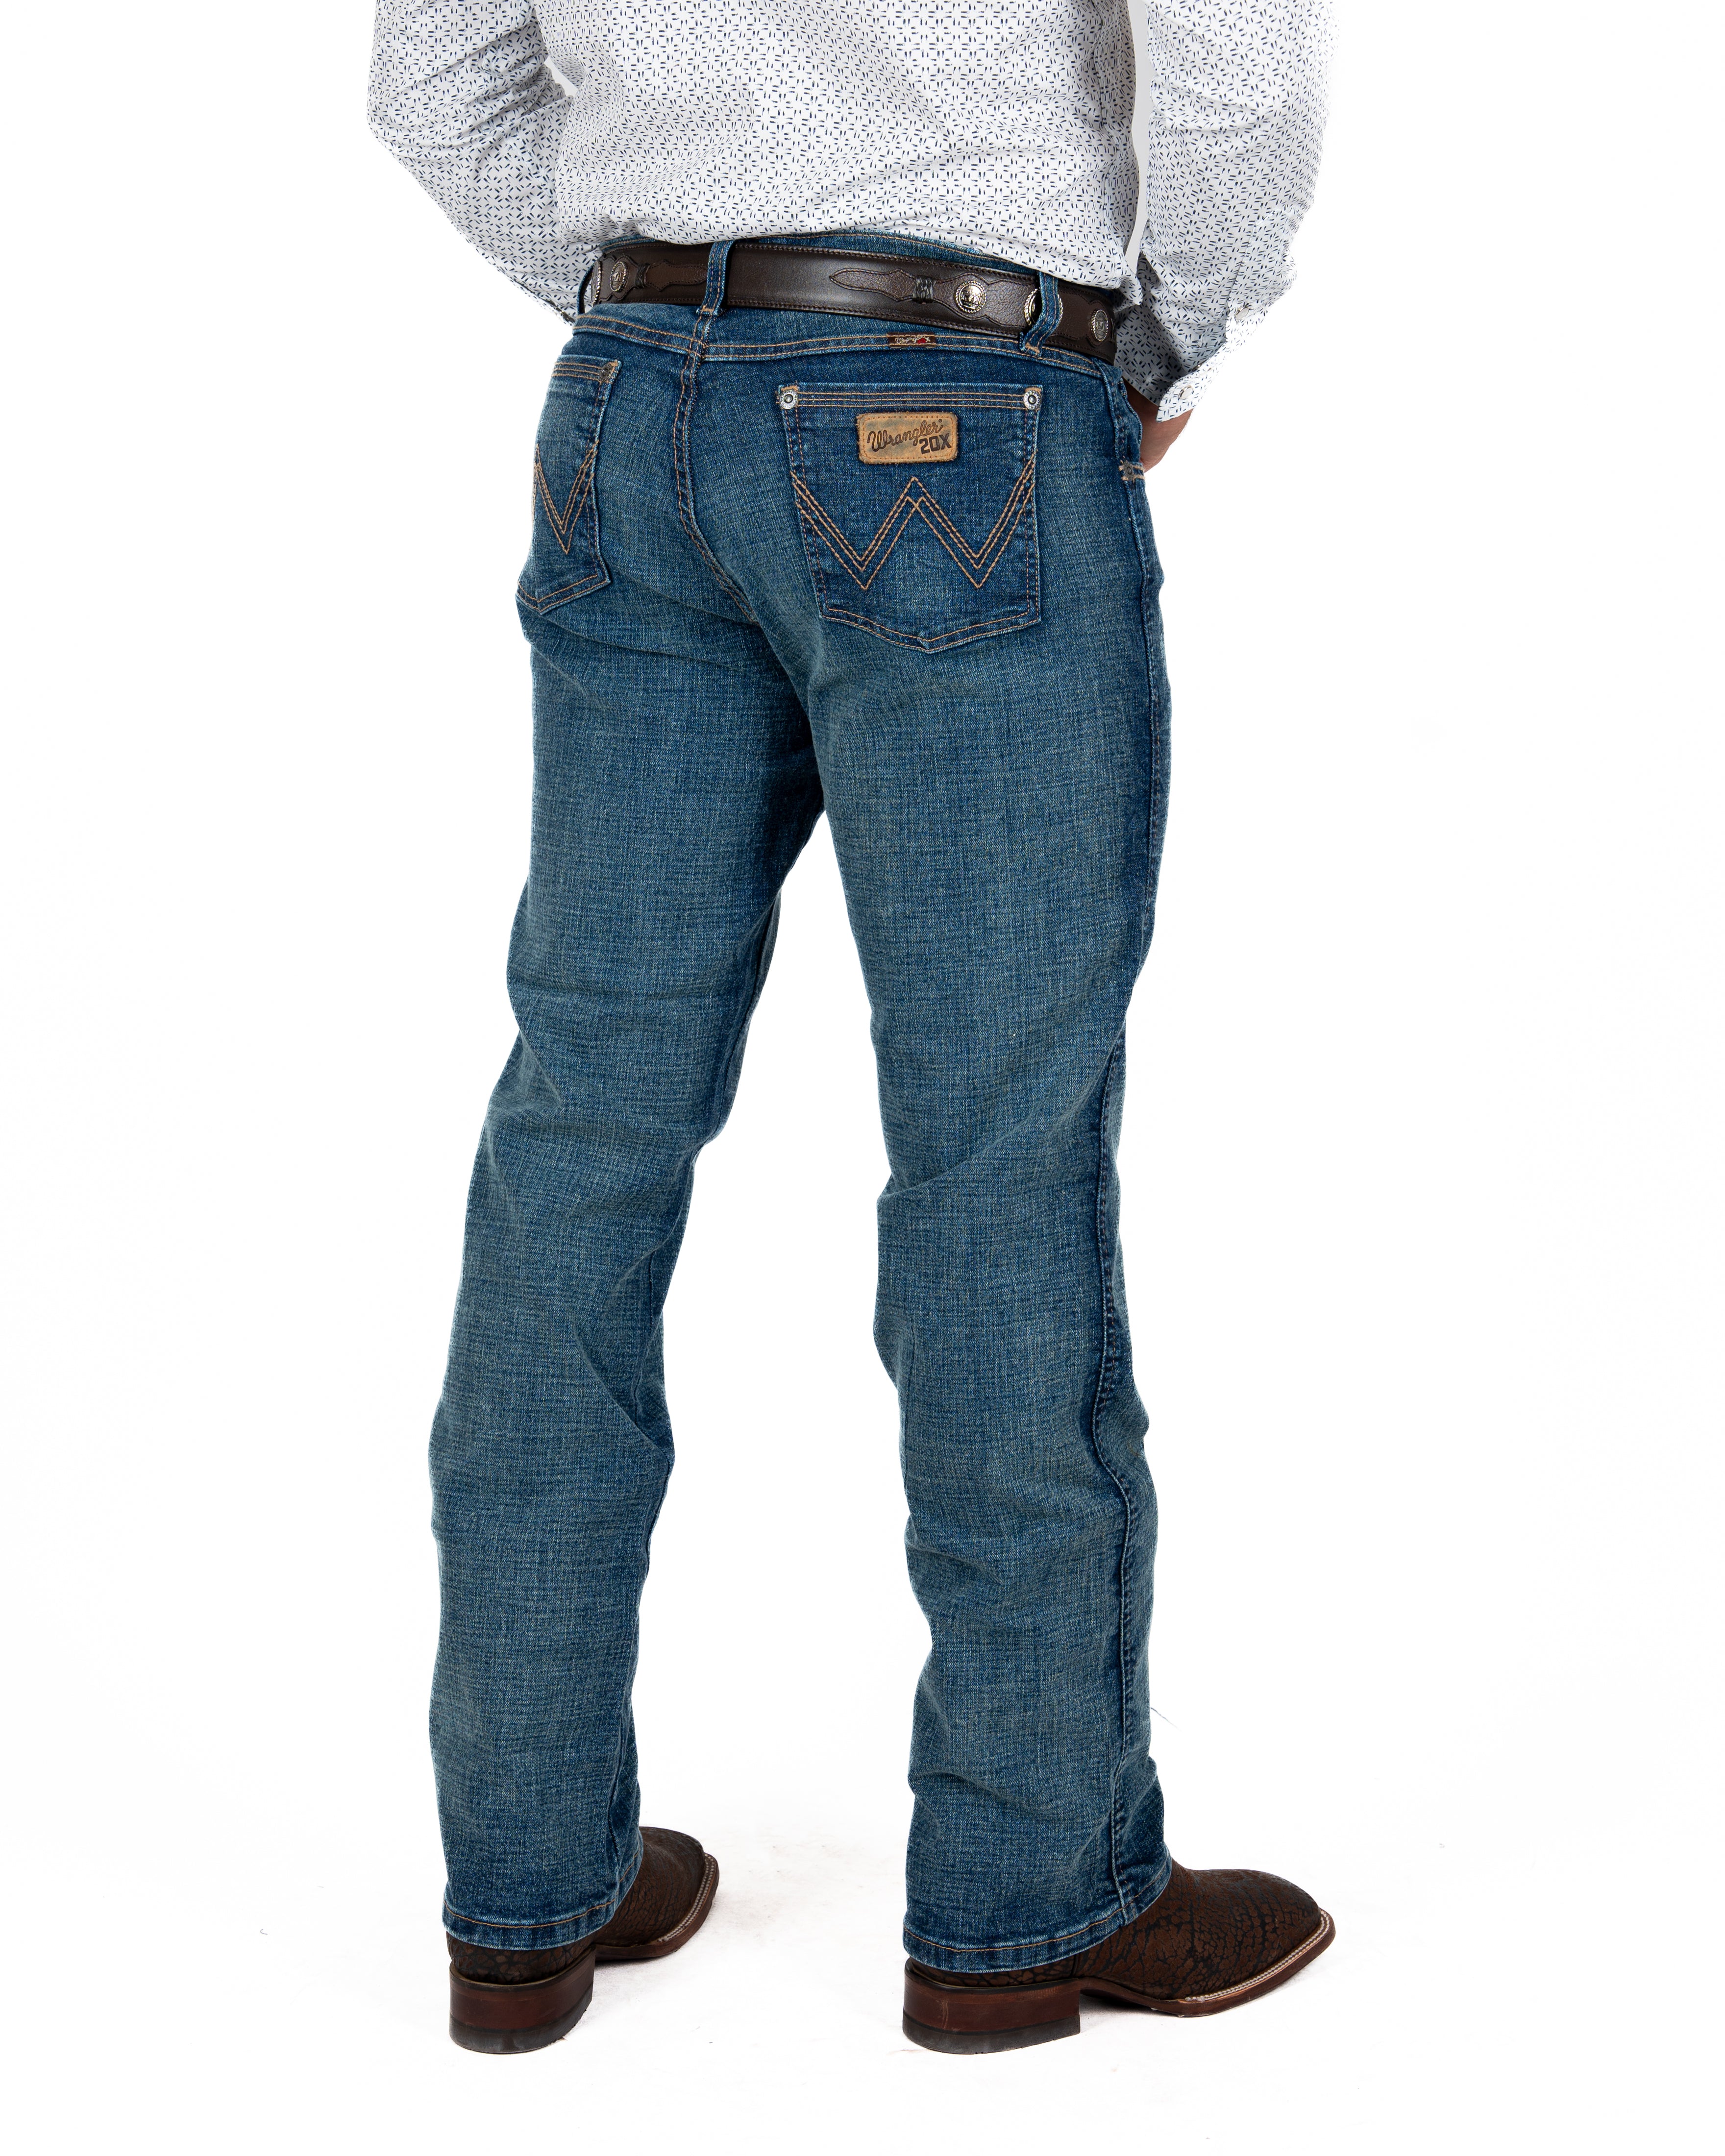 Jeans Wrangler 20X Slim Boot Caballero